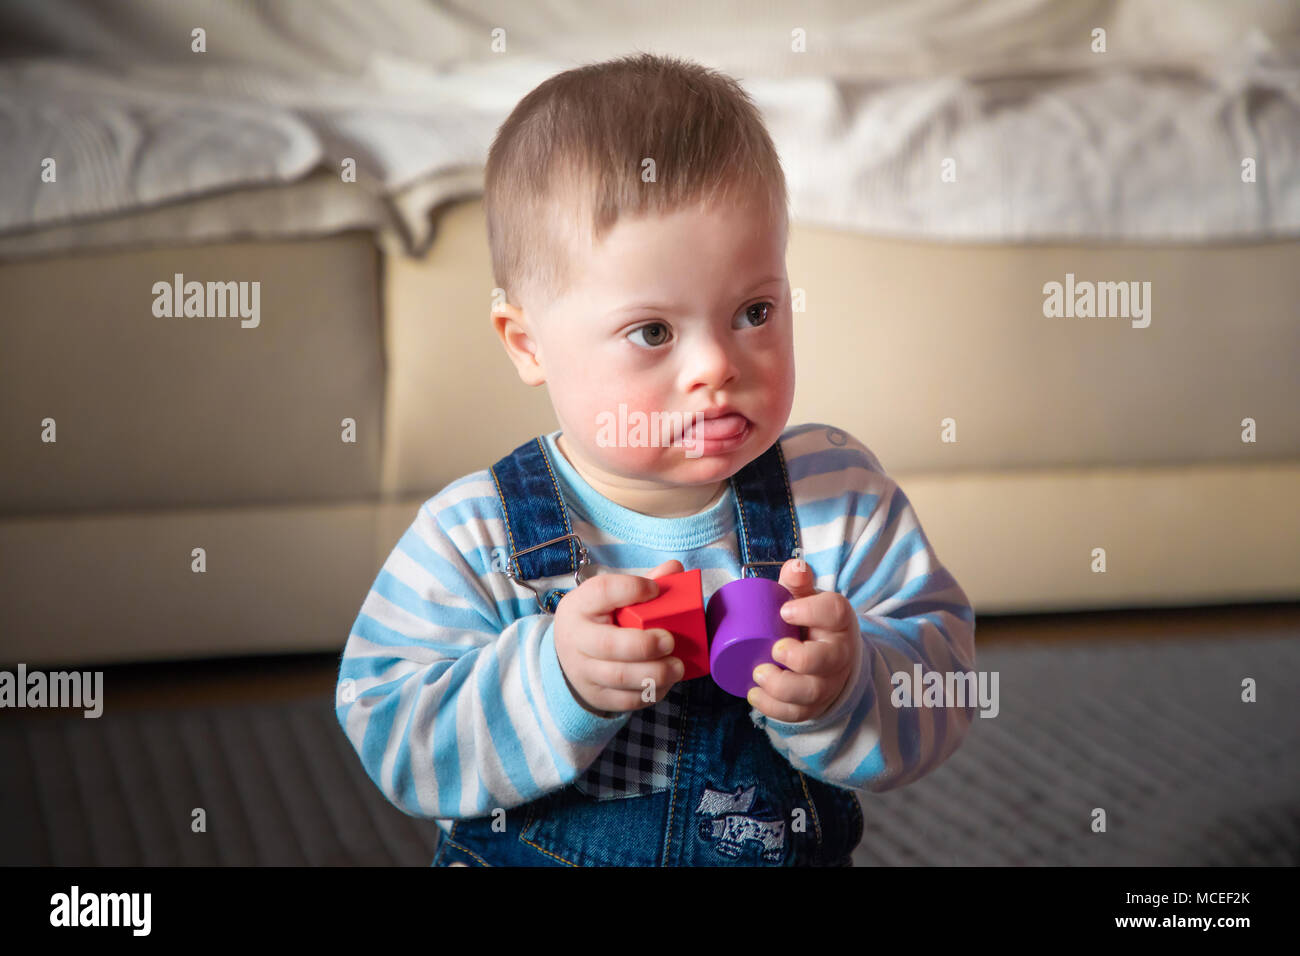 Alamy Stock Photo Baby